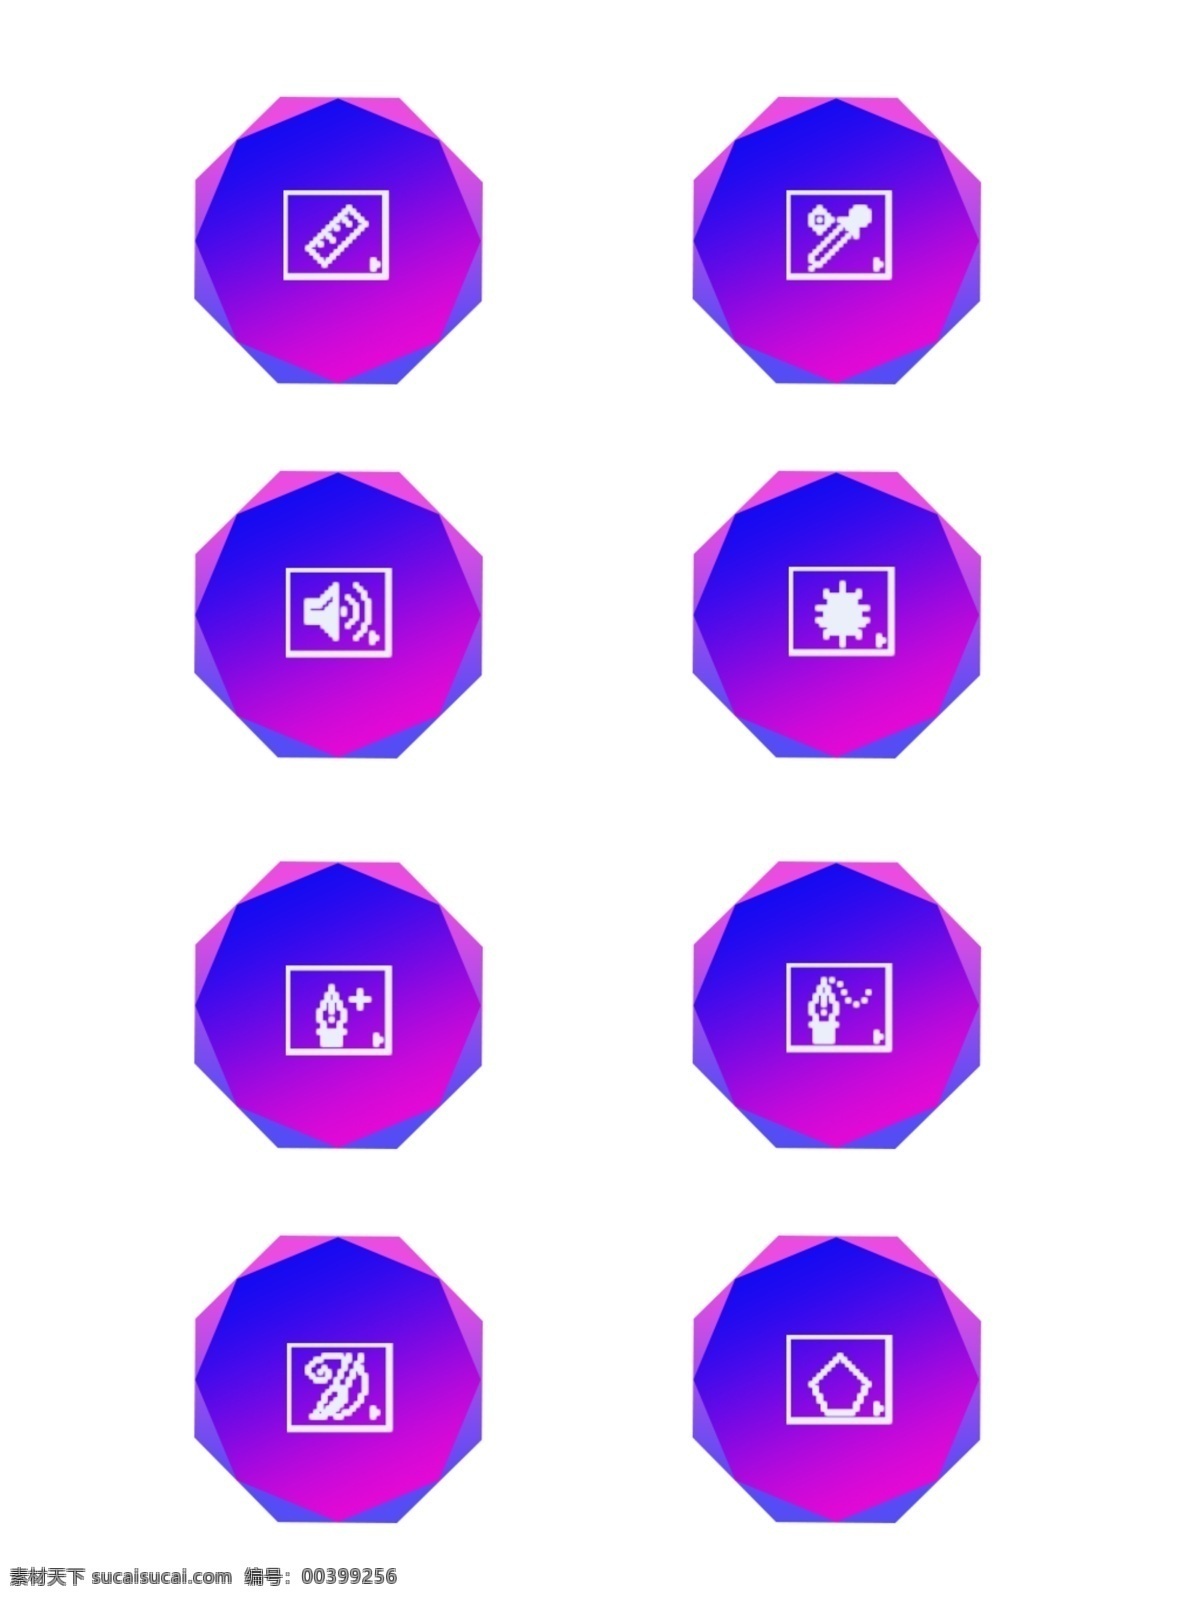 蓝紫色 渐变 八边形 生活 中 常见 图标素材 商用 蓝色图标 简约 装饰素材 蓝紫色图标 可商用 word工具